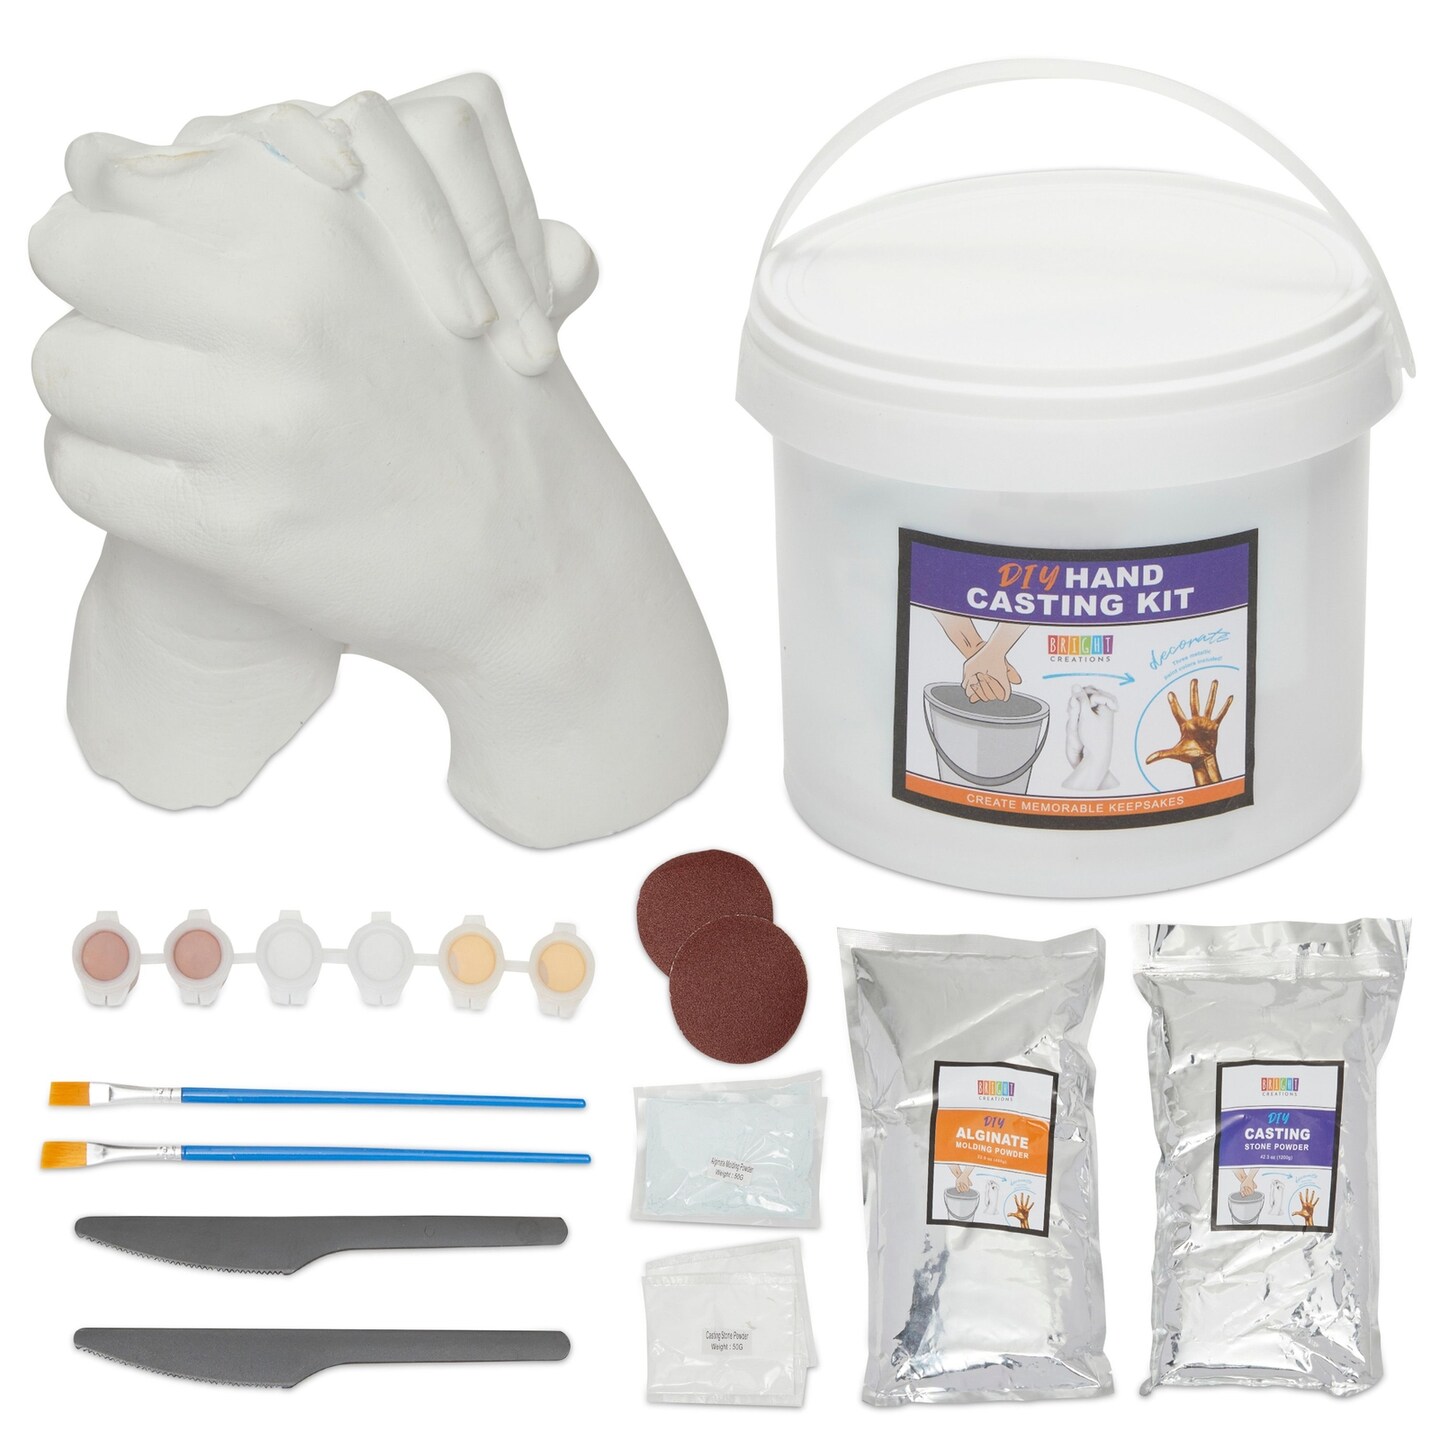 Tenee hand casting kit couples & hand molding kit for adults, keepsake hand  mold kit couples for holiday activities, wedding, frien